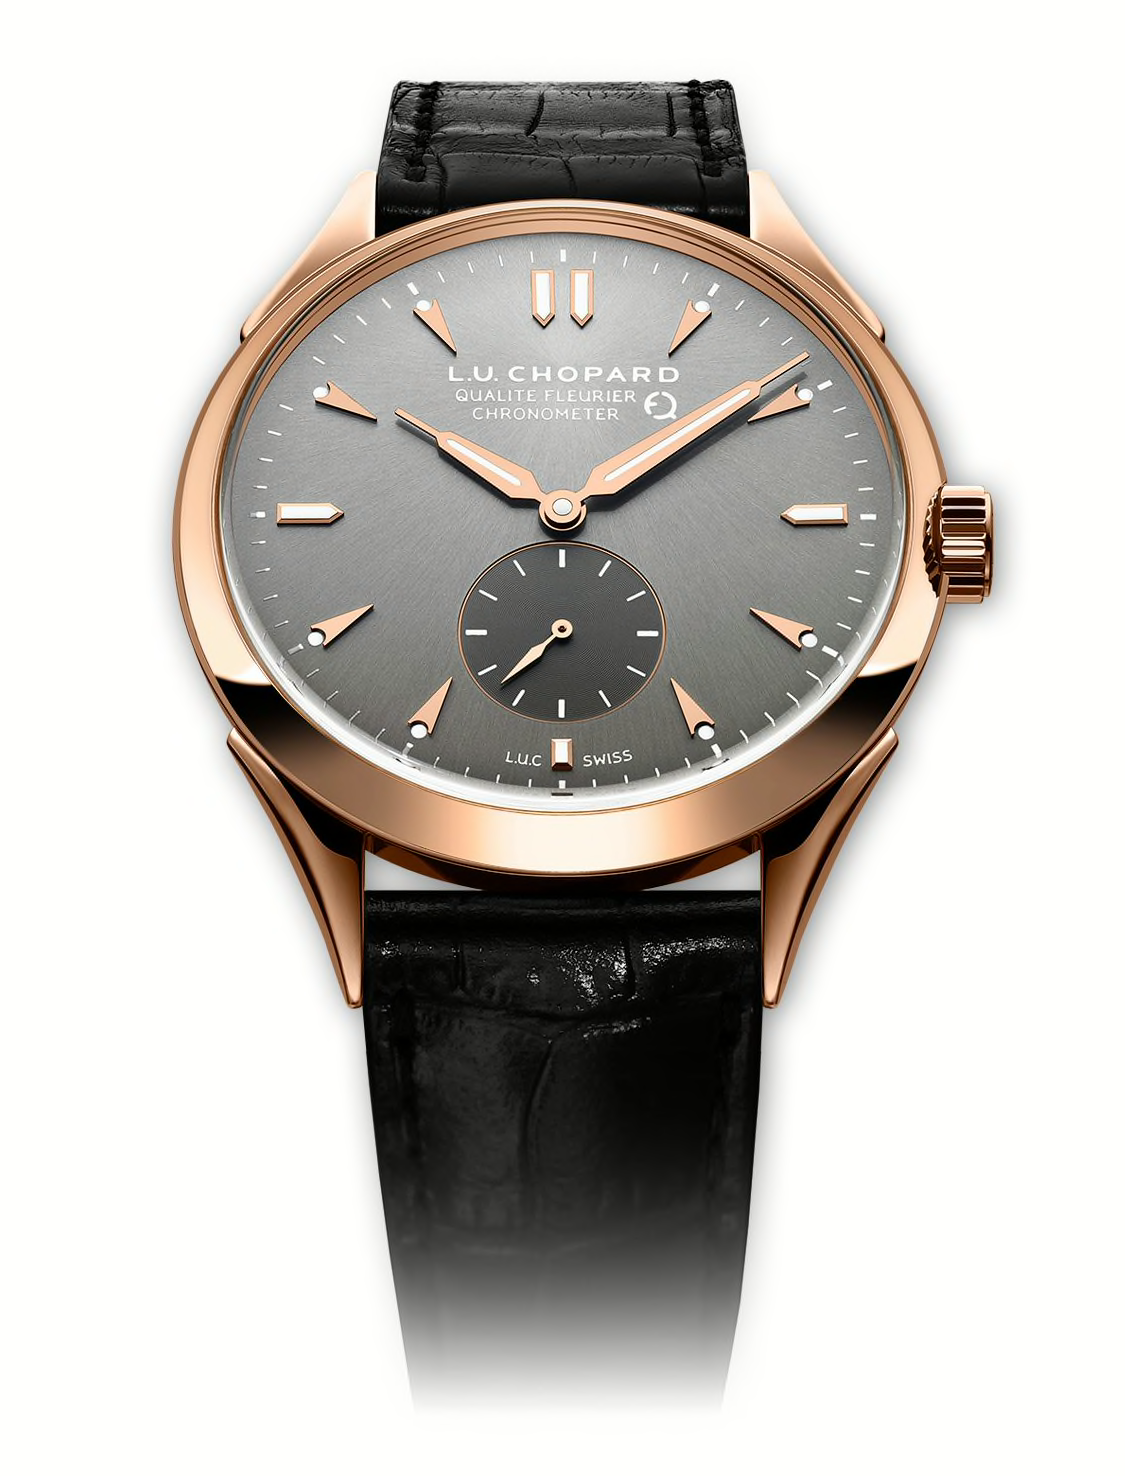 Швейцарские часы Chopard L.U.C, отмеченные сертификатом Института качества Флерье — Qualité Fleurier.